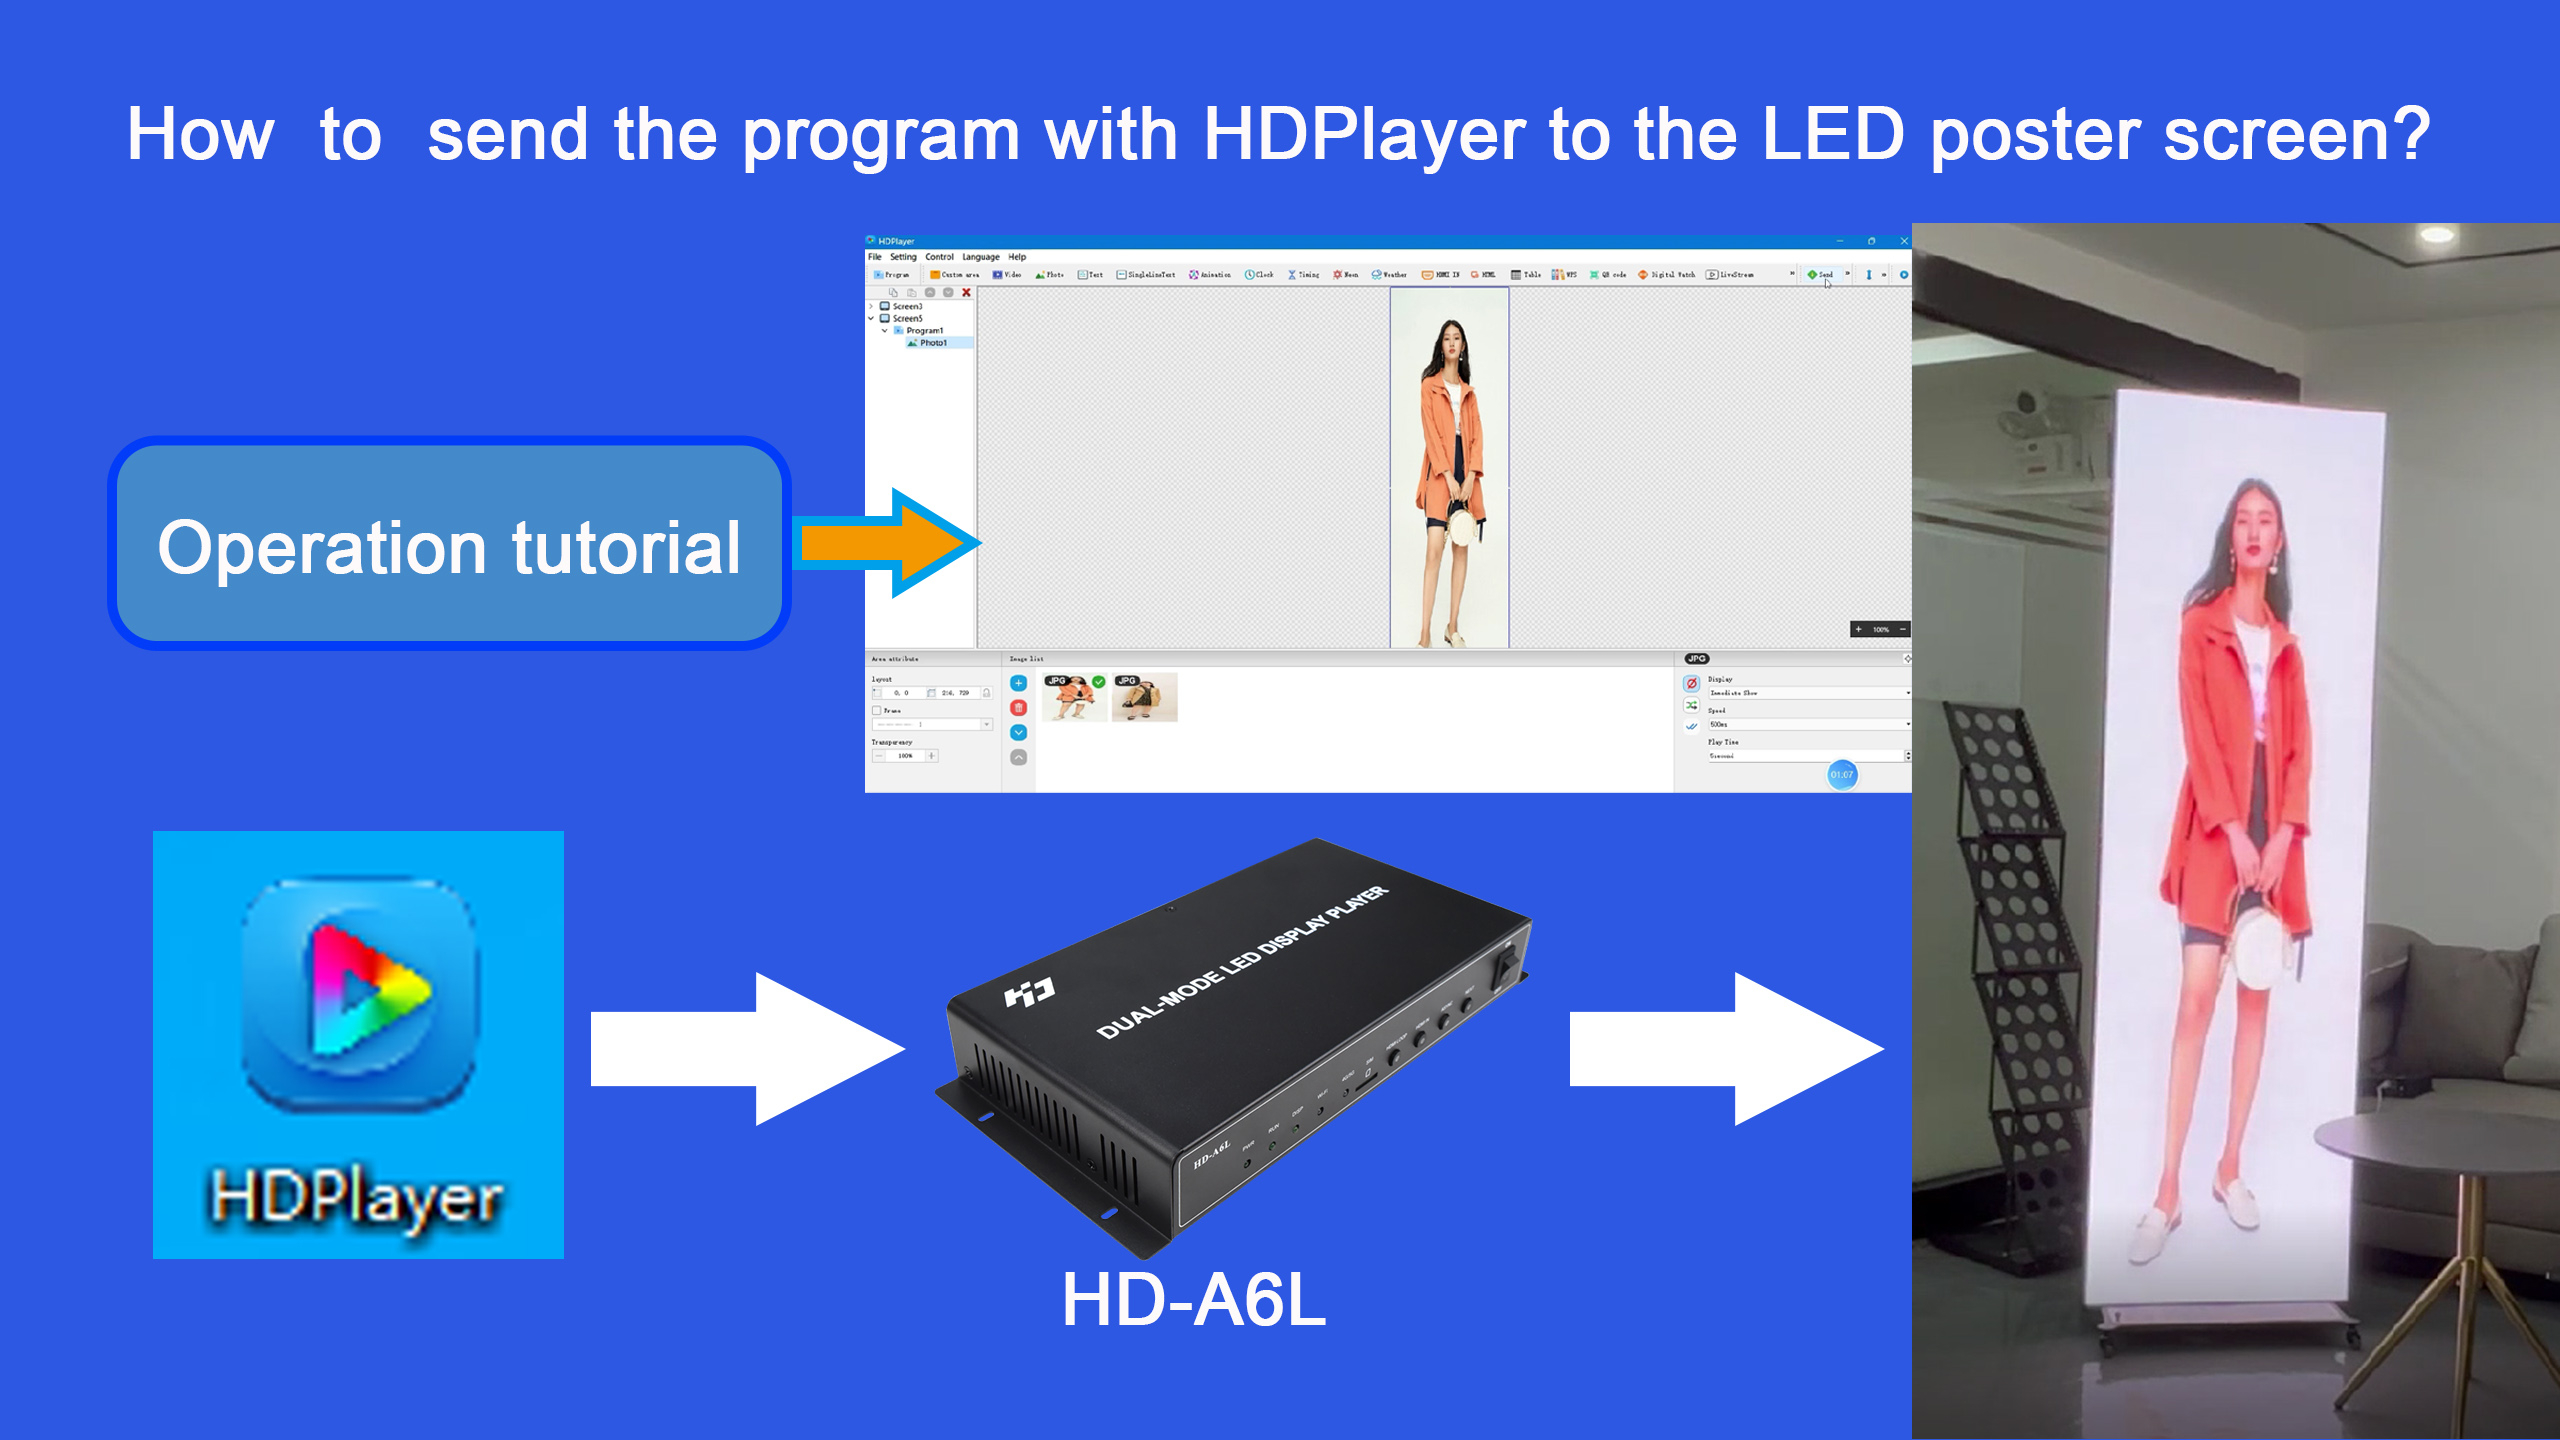 כיצד לשלוח את התוכנית עם HDPlayer למסך פוסטר LED? נגן מולטימדיה LED Display HD-A6L מבית Huidu